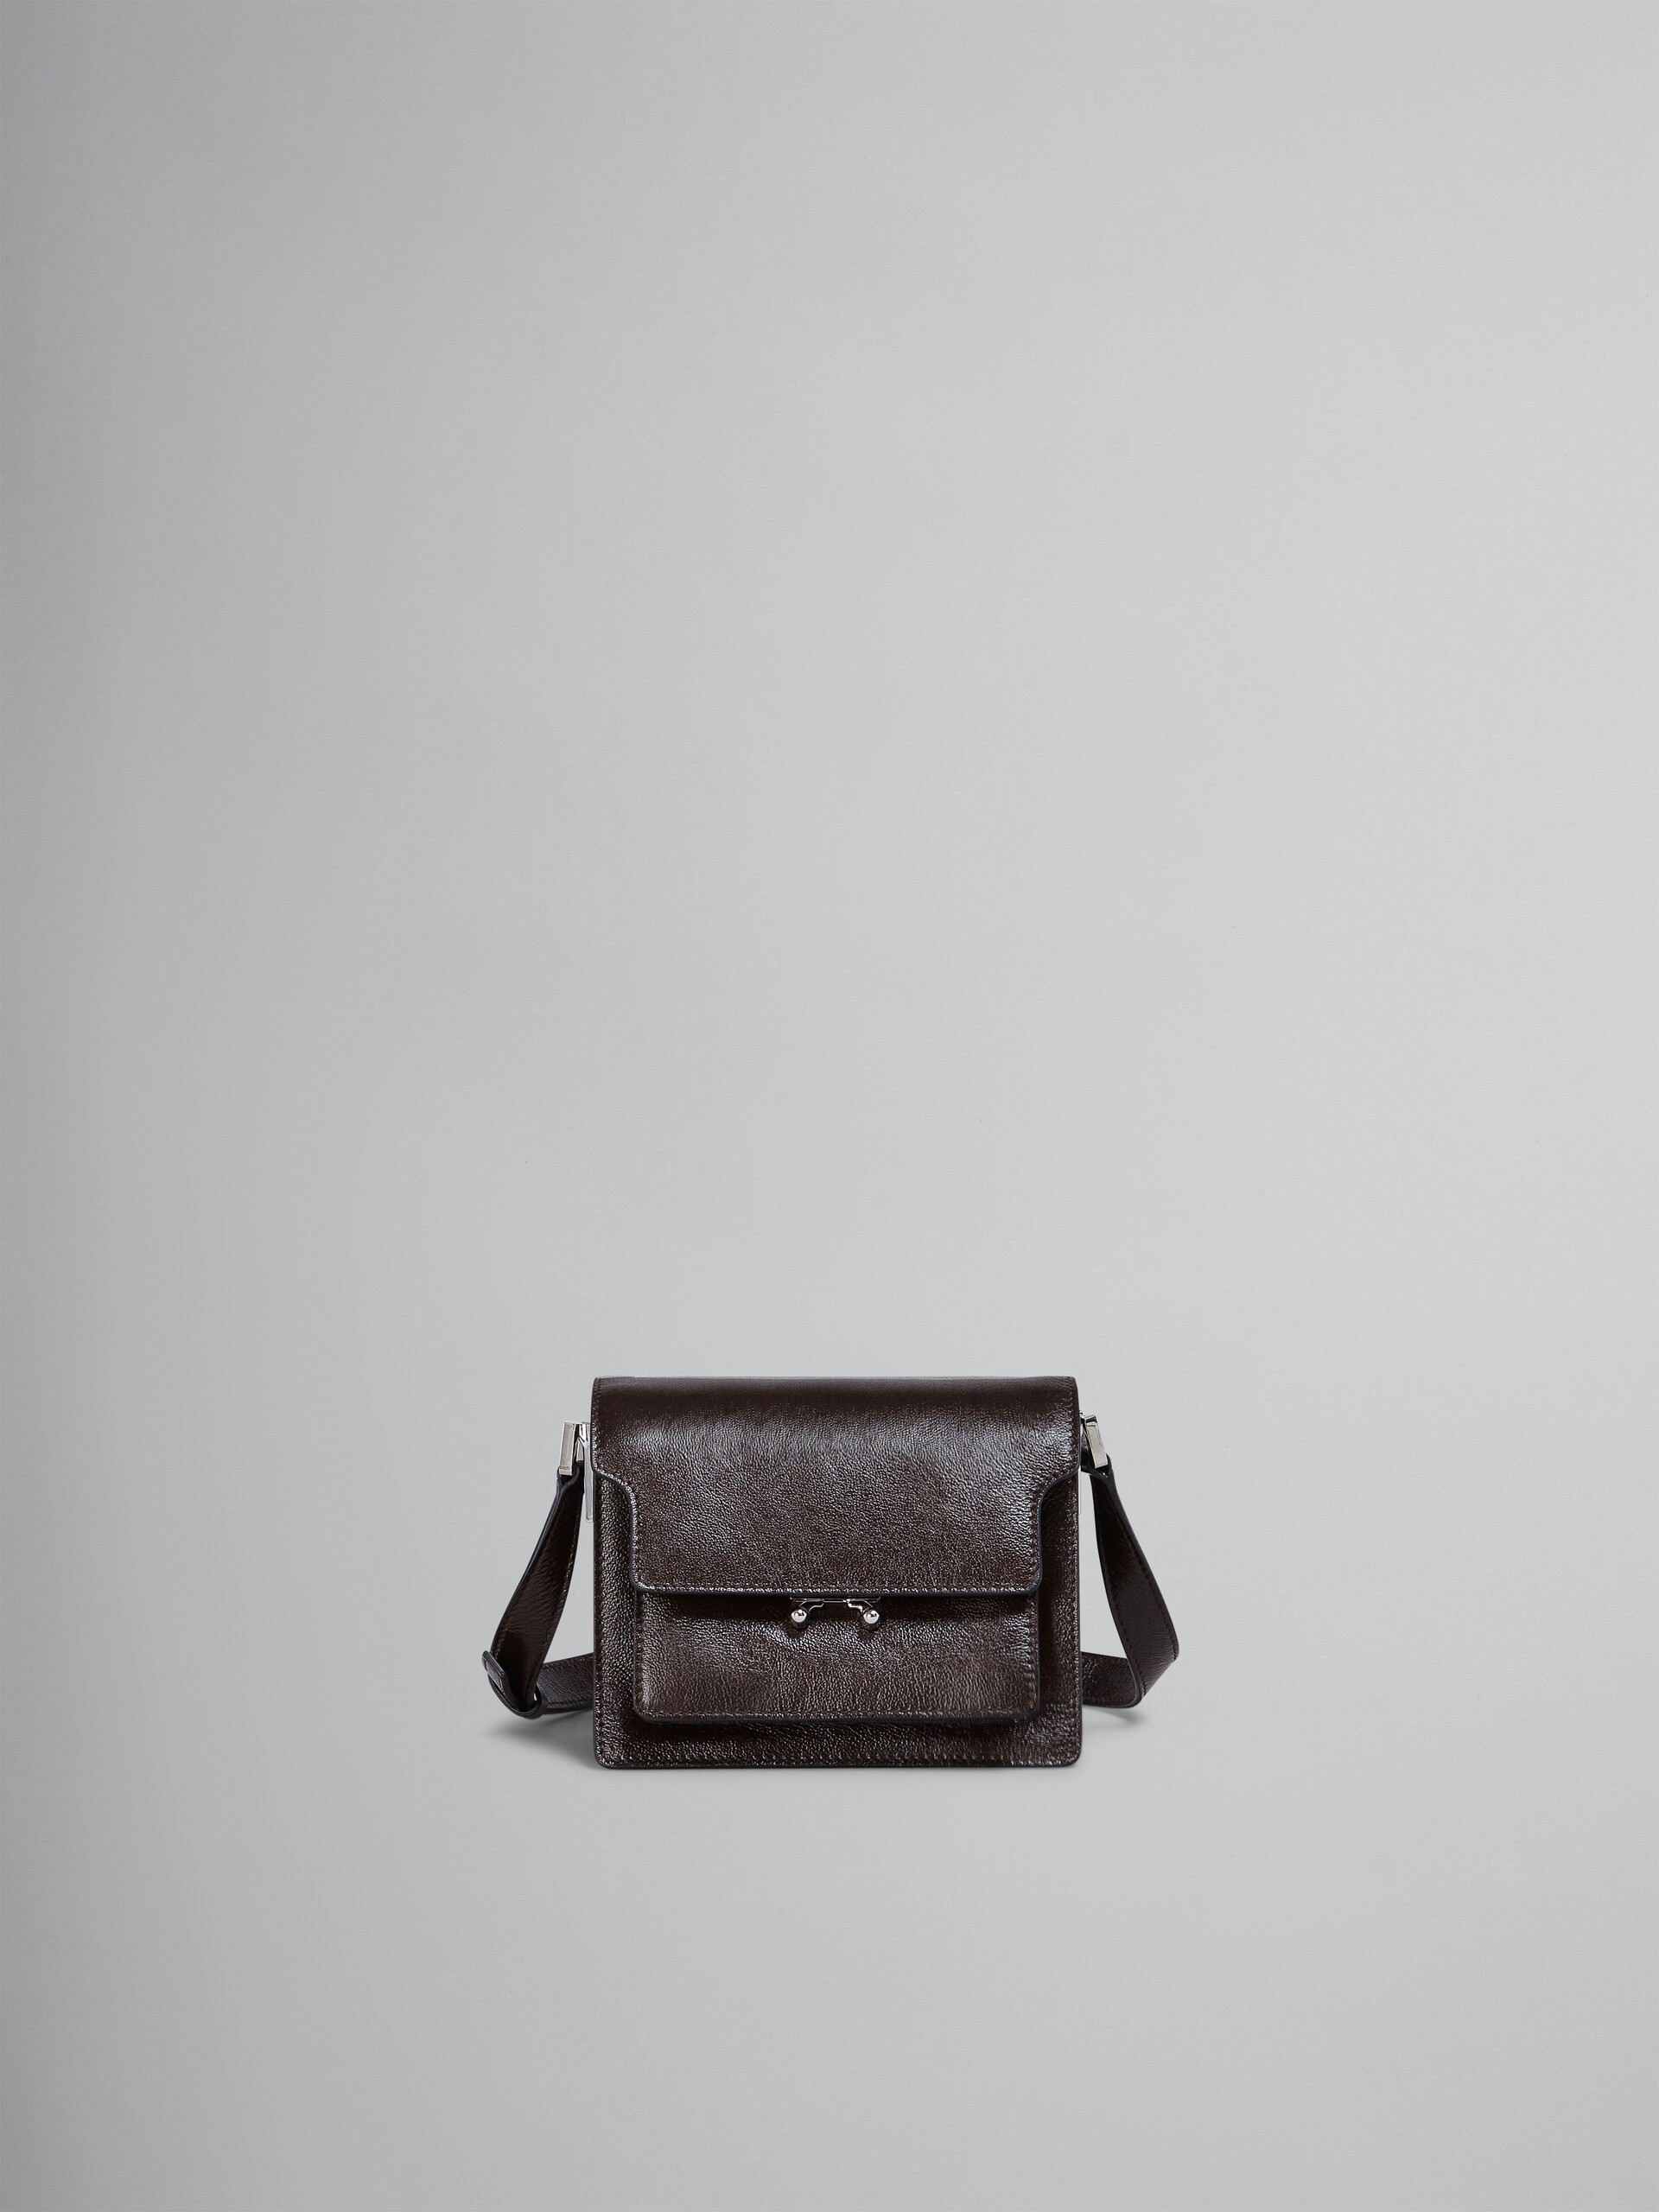 TRUNK SOFT bag mini in pelle marrone - Borse a spalla - Image 1